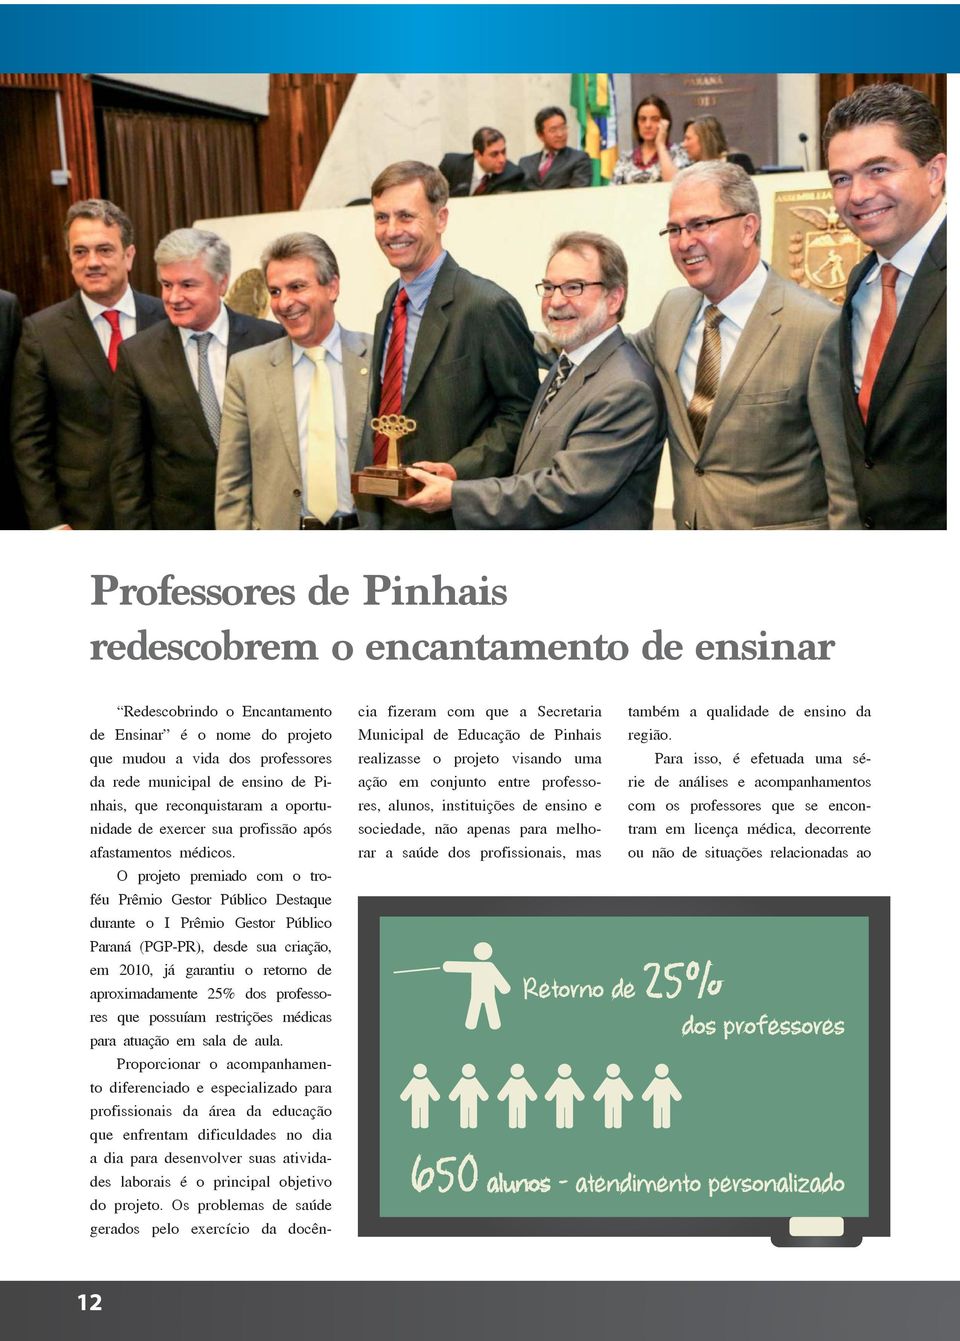 O projeto premiado com o troféu Prêmio Gestor Público Destaque durante o I Prêmio Gestor Público Paraná (PGP-PR), desde sua criação, em 2010, já garantiu o retorno de aproximadamente 25% dos